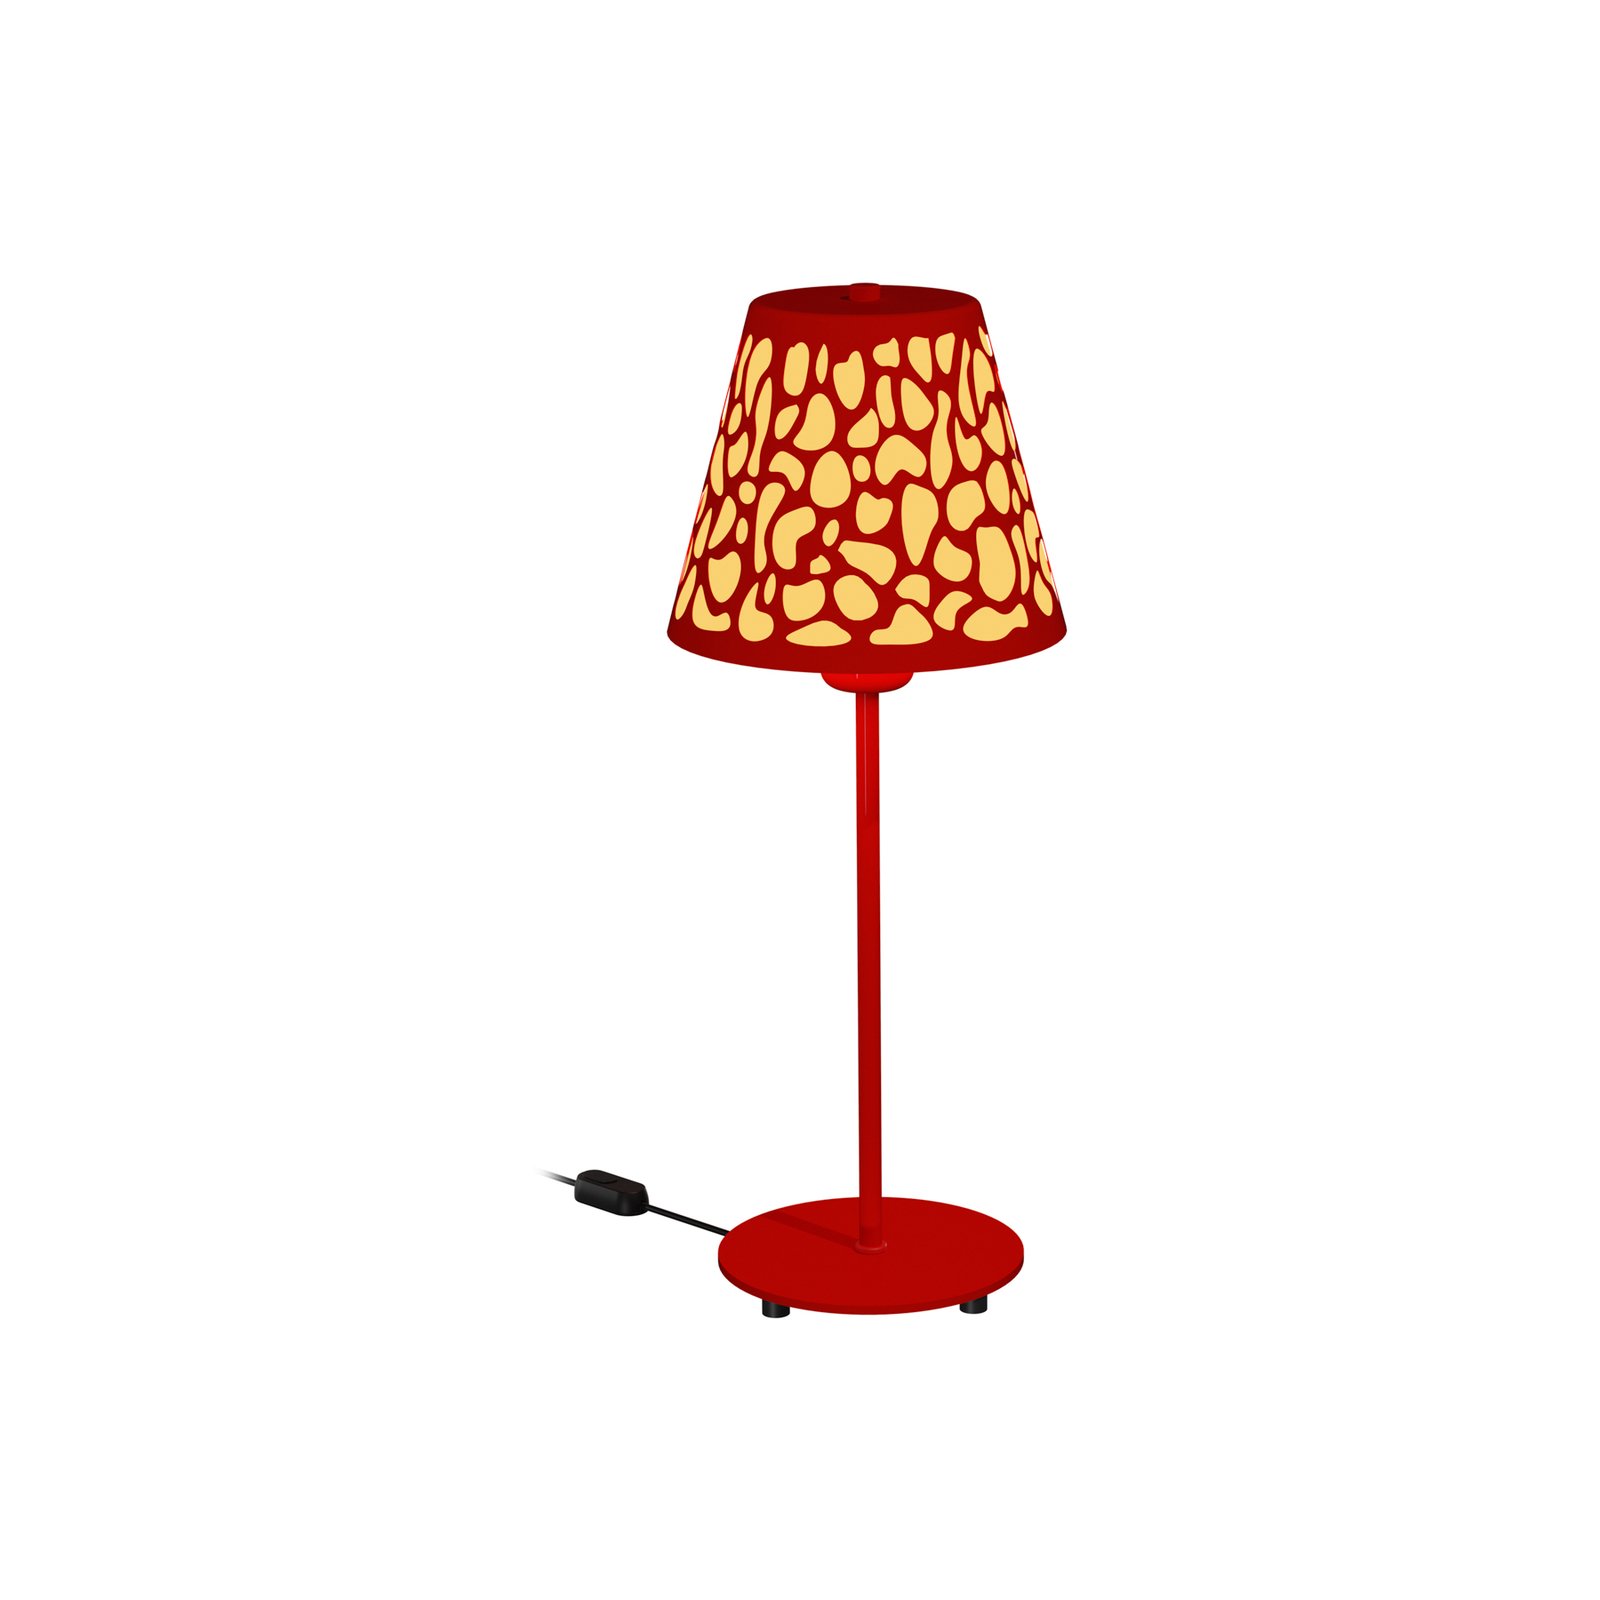 Aluminor Nihoa bordlampe med hulmønster, rød/gul